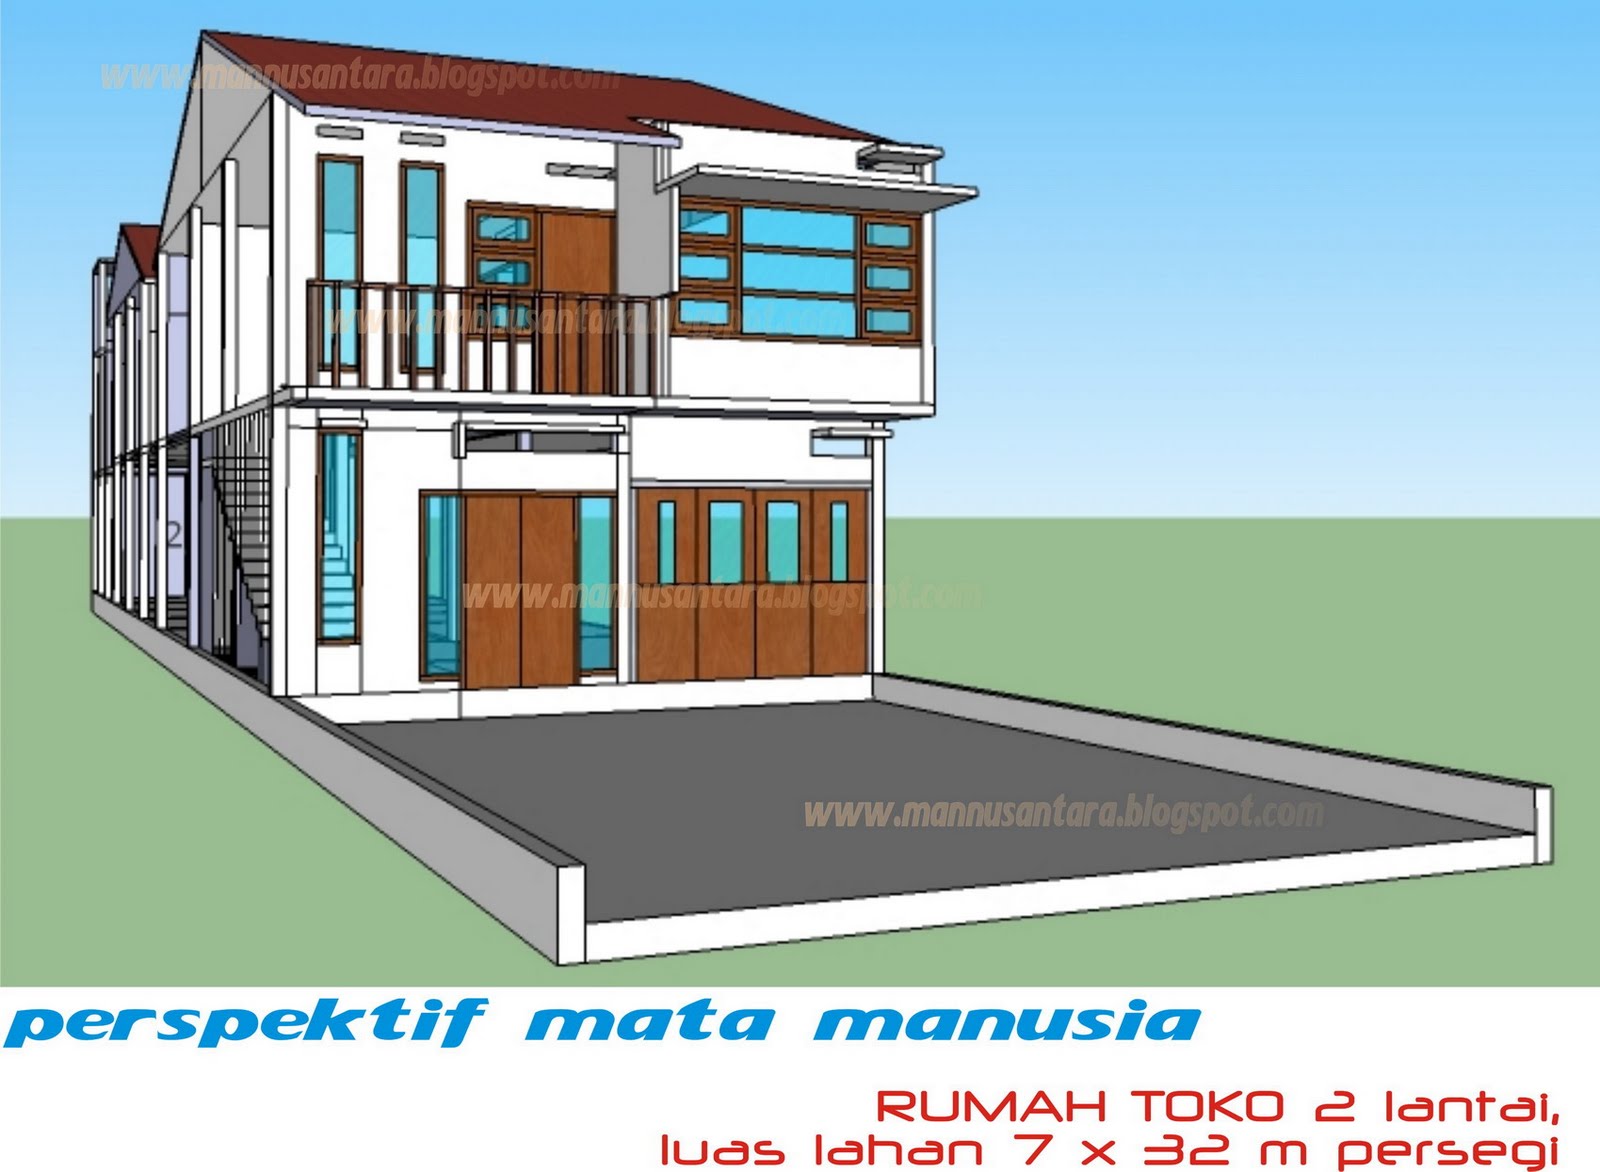 Desain Ruko Rumah Toko Minimalis 2 Lantai Di Salatiga Jawa Tengah 